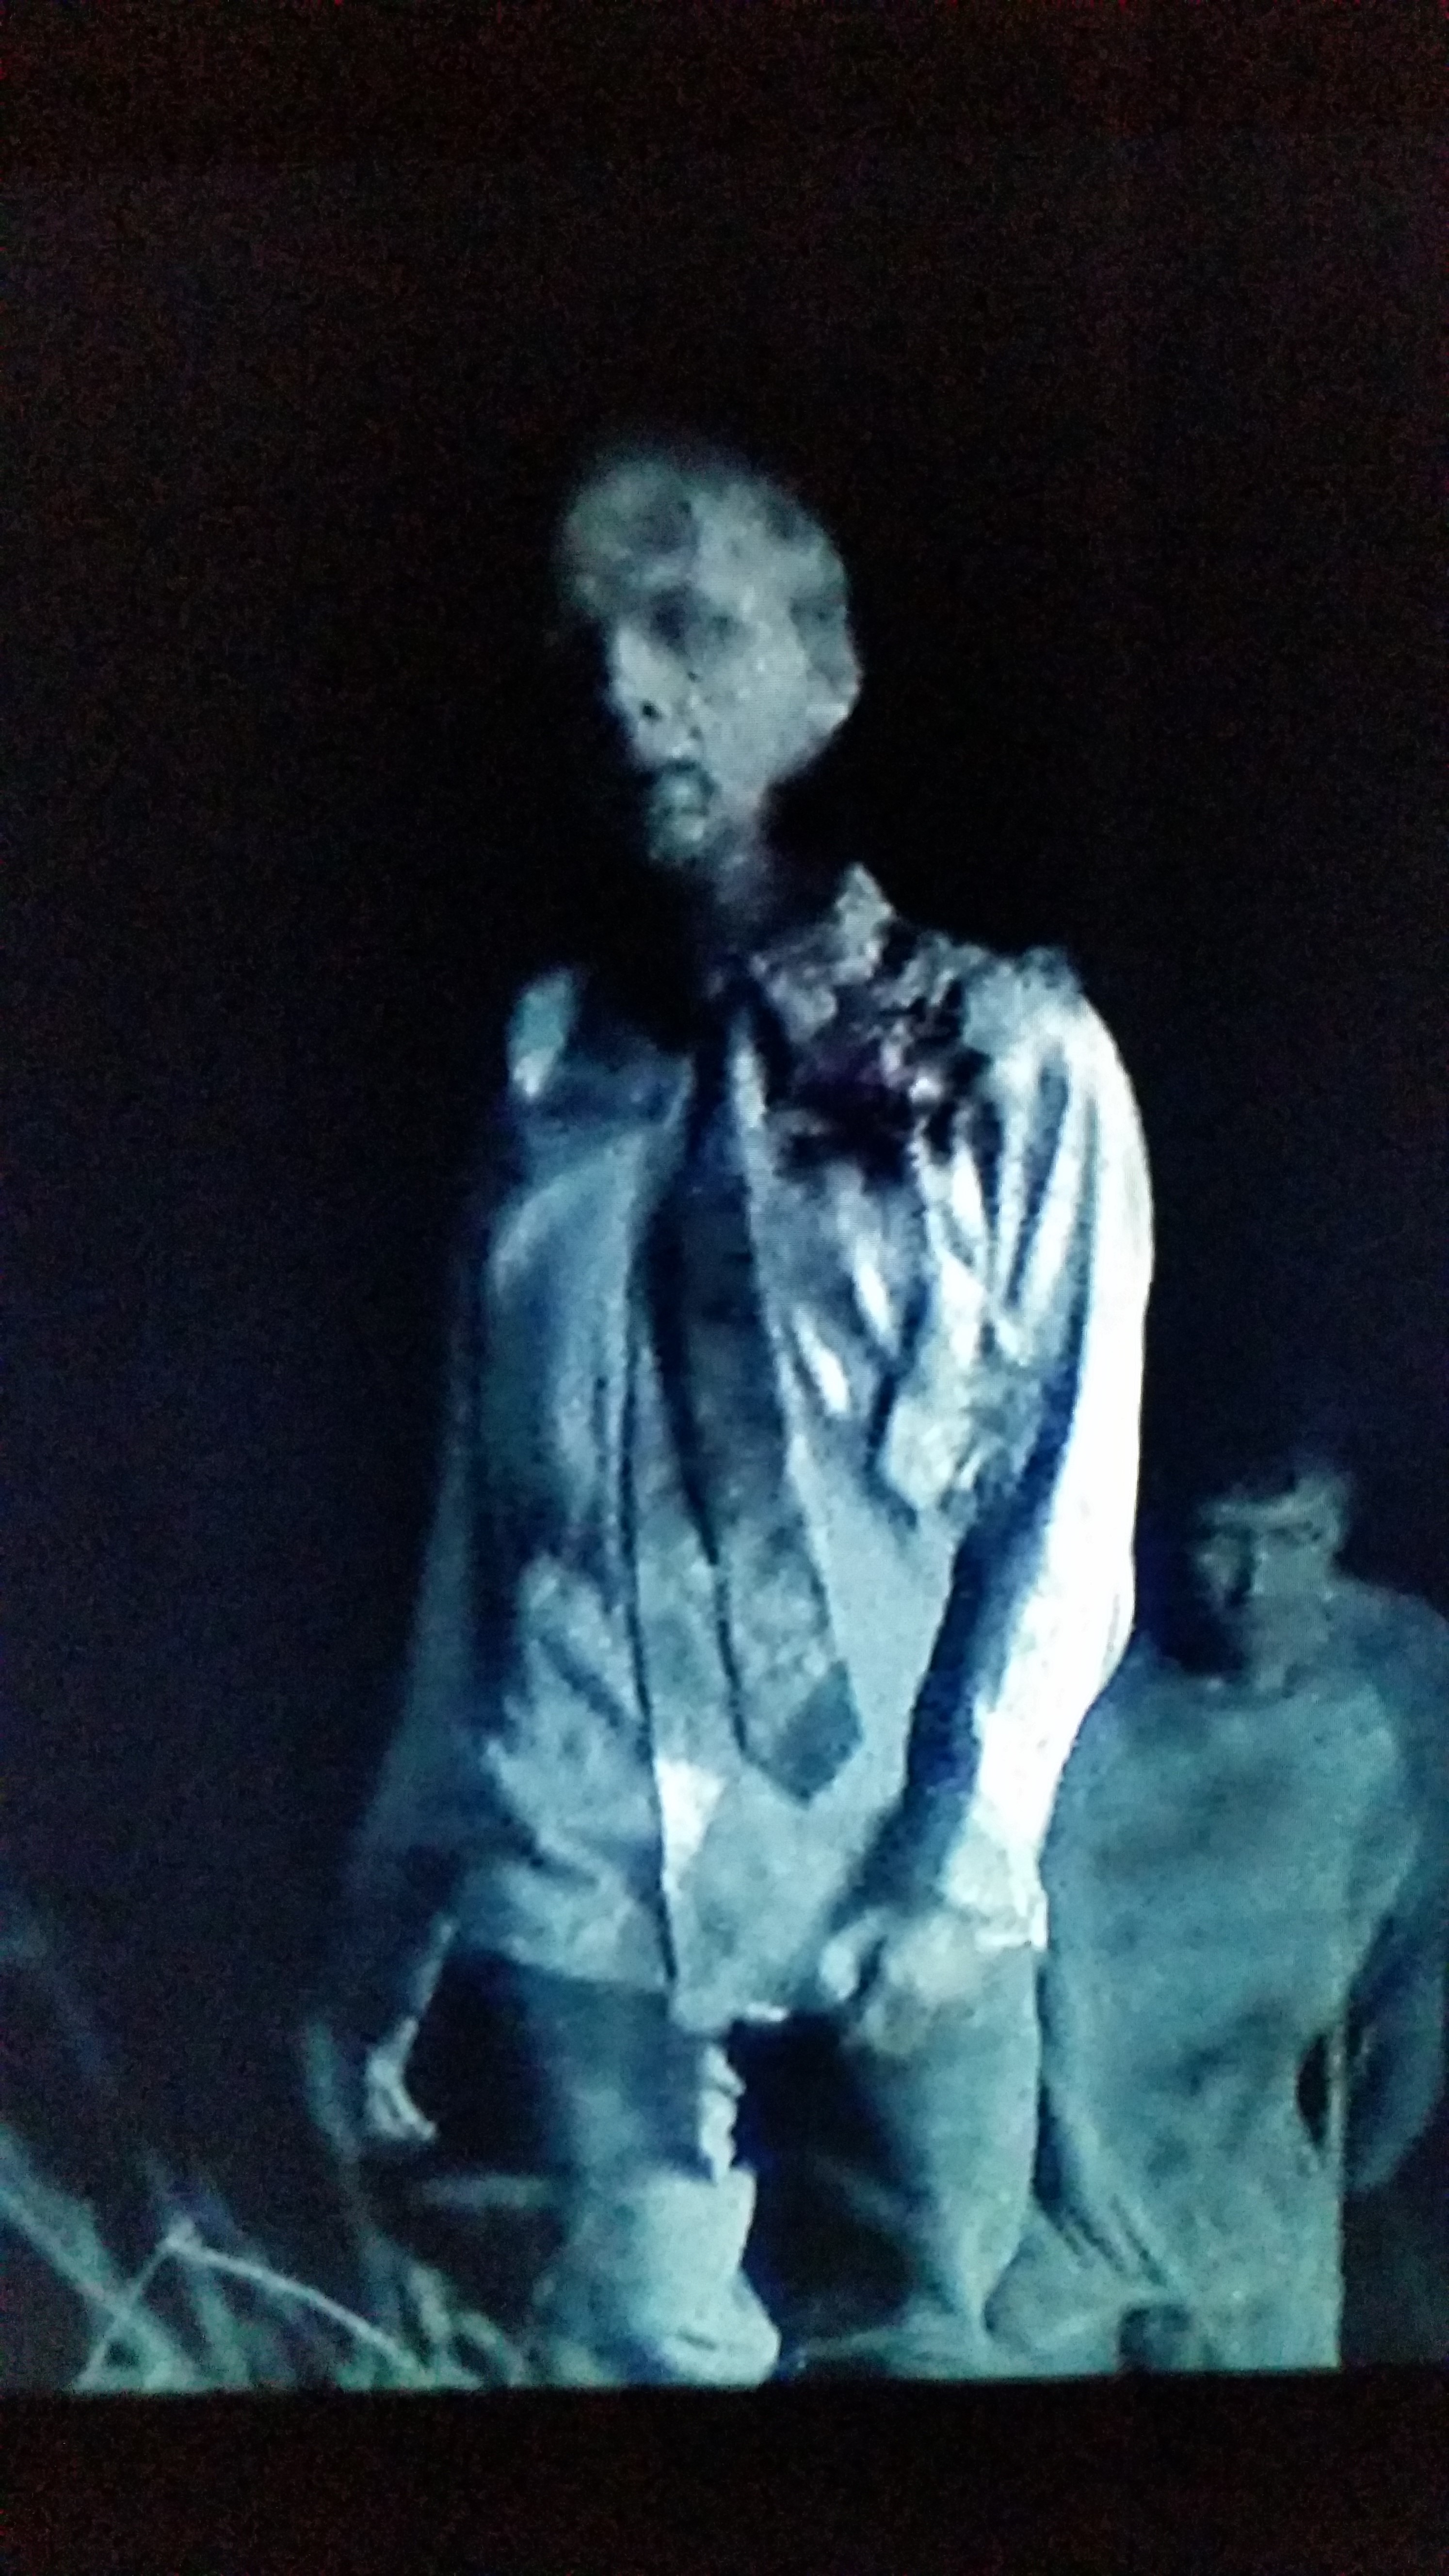 Townspeople Walker (Hero Walker) The Walking Dead, season 2, episode 9